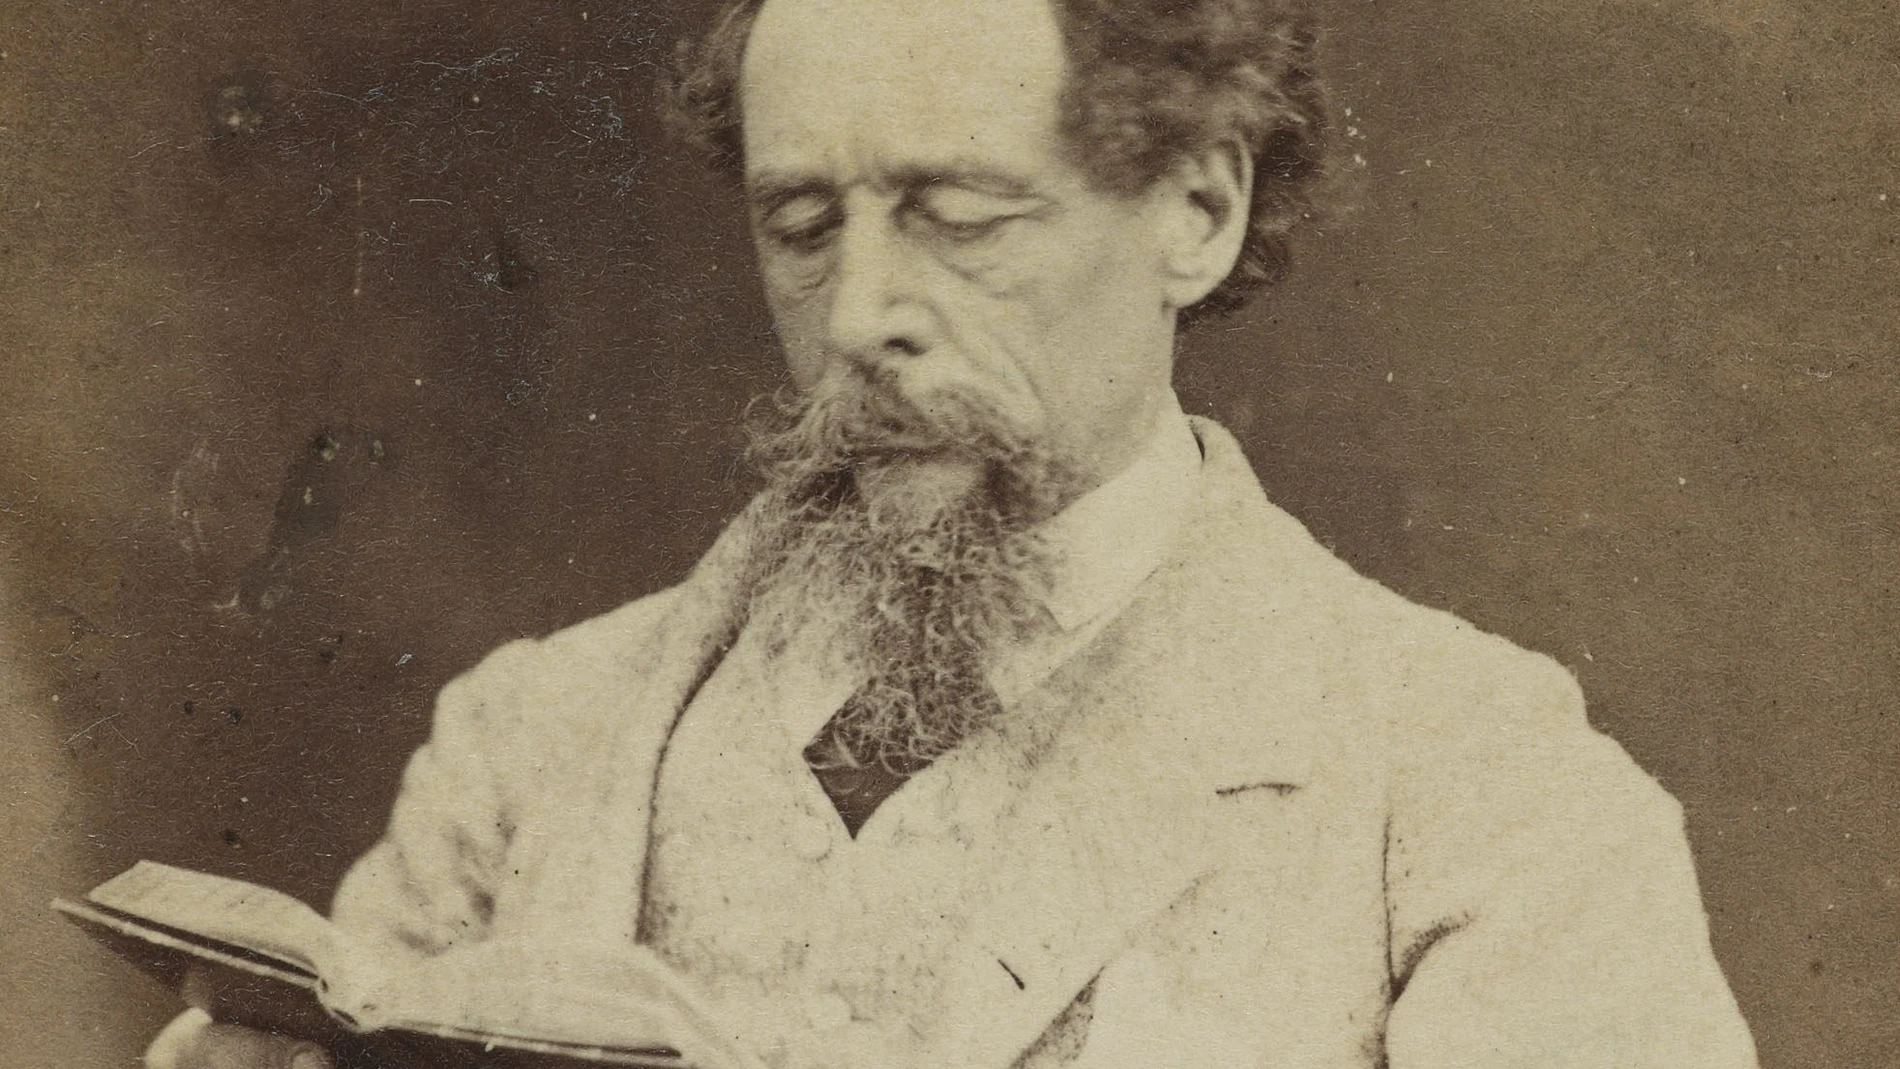 Fotografía de Charles Dickens en 1863 por Robert Hindry Mason.